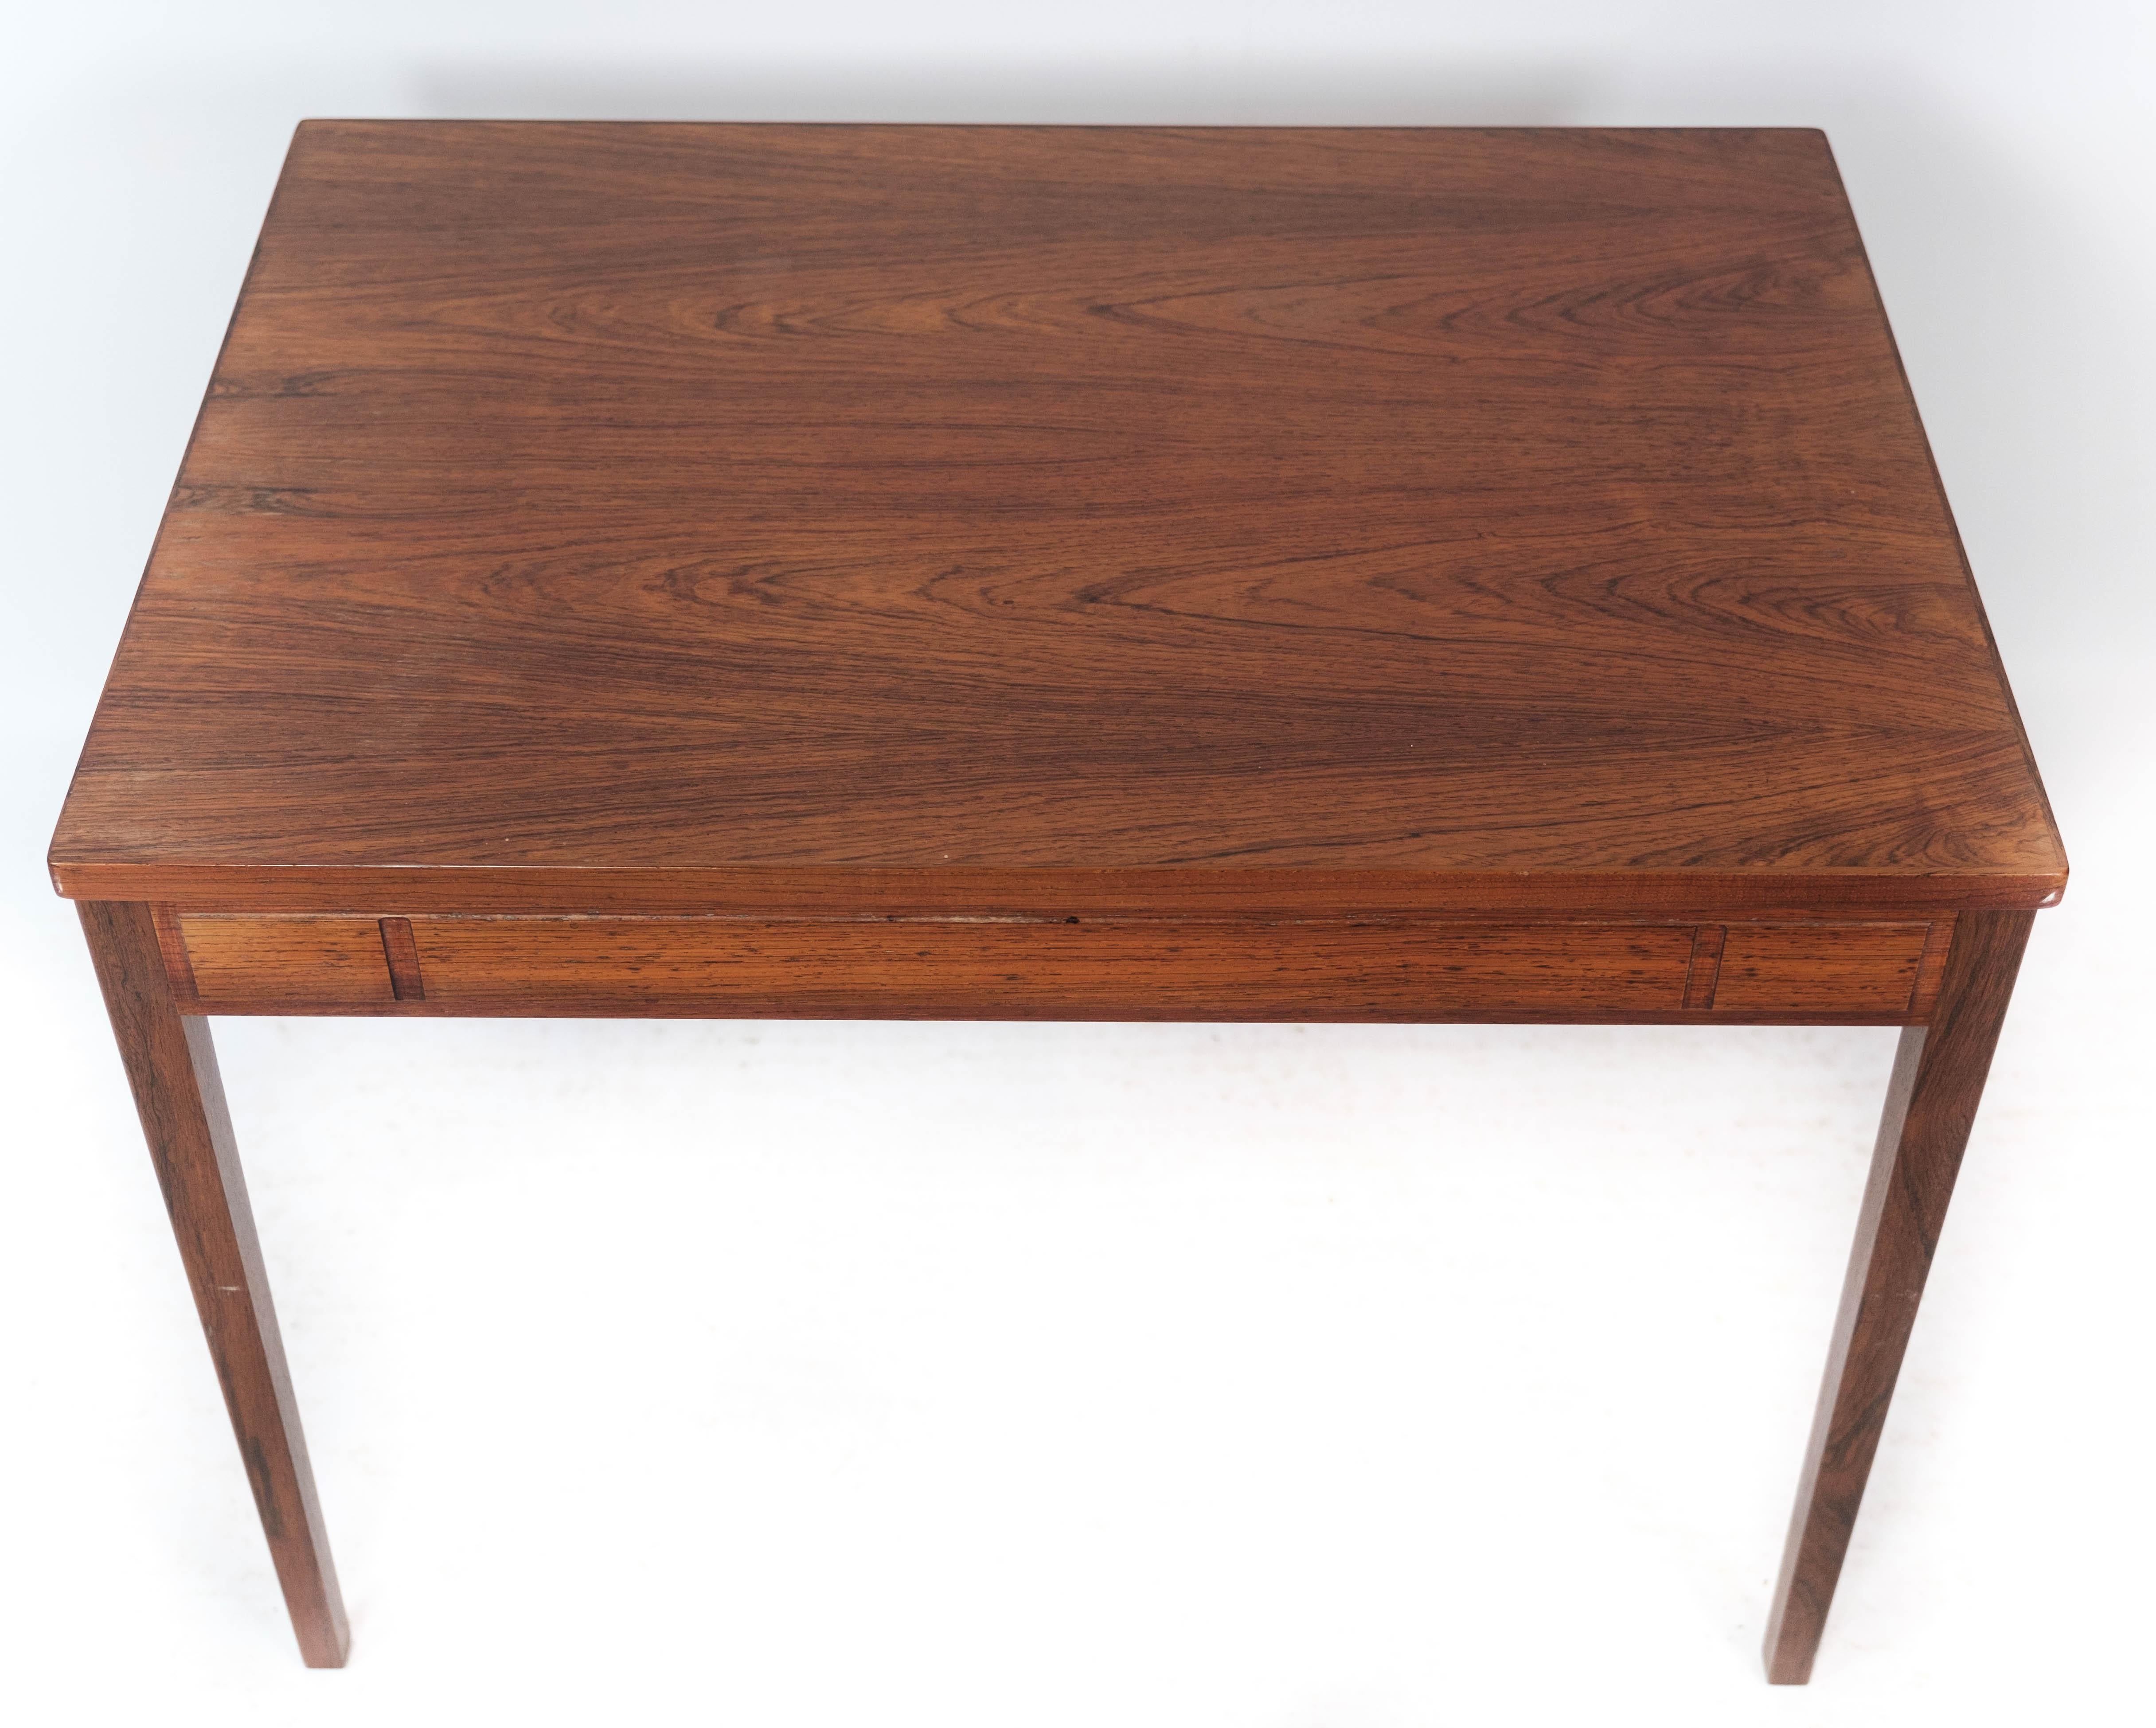 
Der aus Palisanderholz gefertigte Beistelltisch mit dänischem Design aus den 1960er Jahren ist ein eindrucksvolles Beispiel für die moderne Eleganz der Mitte des Jahrhunderts.

Rosenholz, das für seine satten Farbtöne und ausgeprägten Maserungen